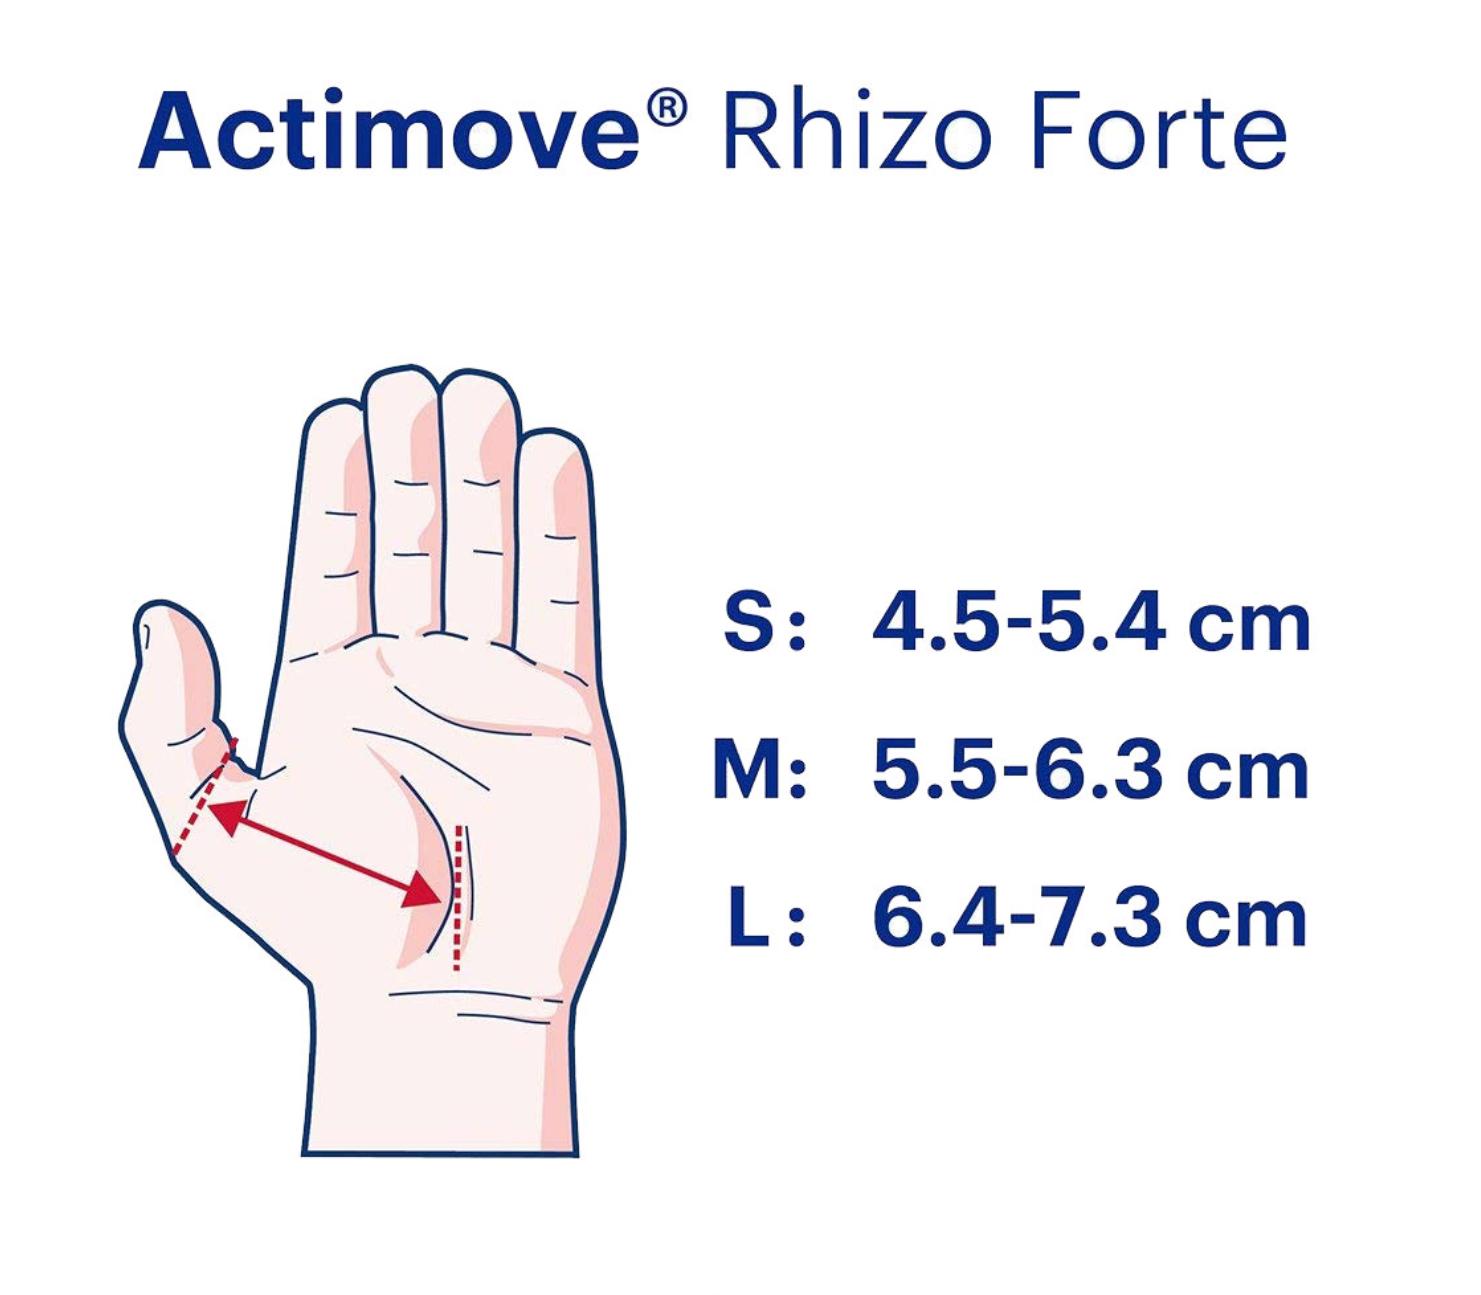 ACTIMOVE RHIZO FORTE M DX